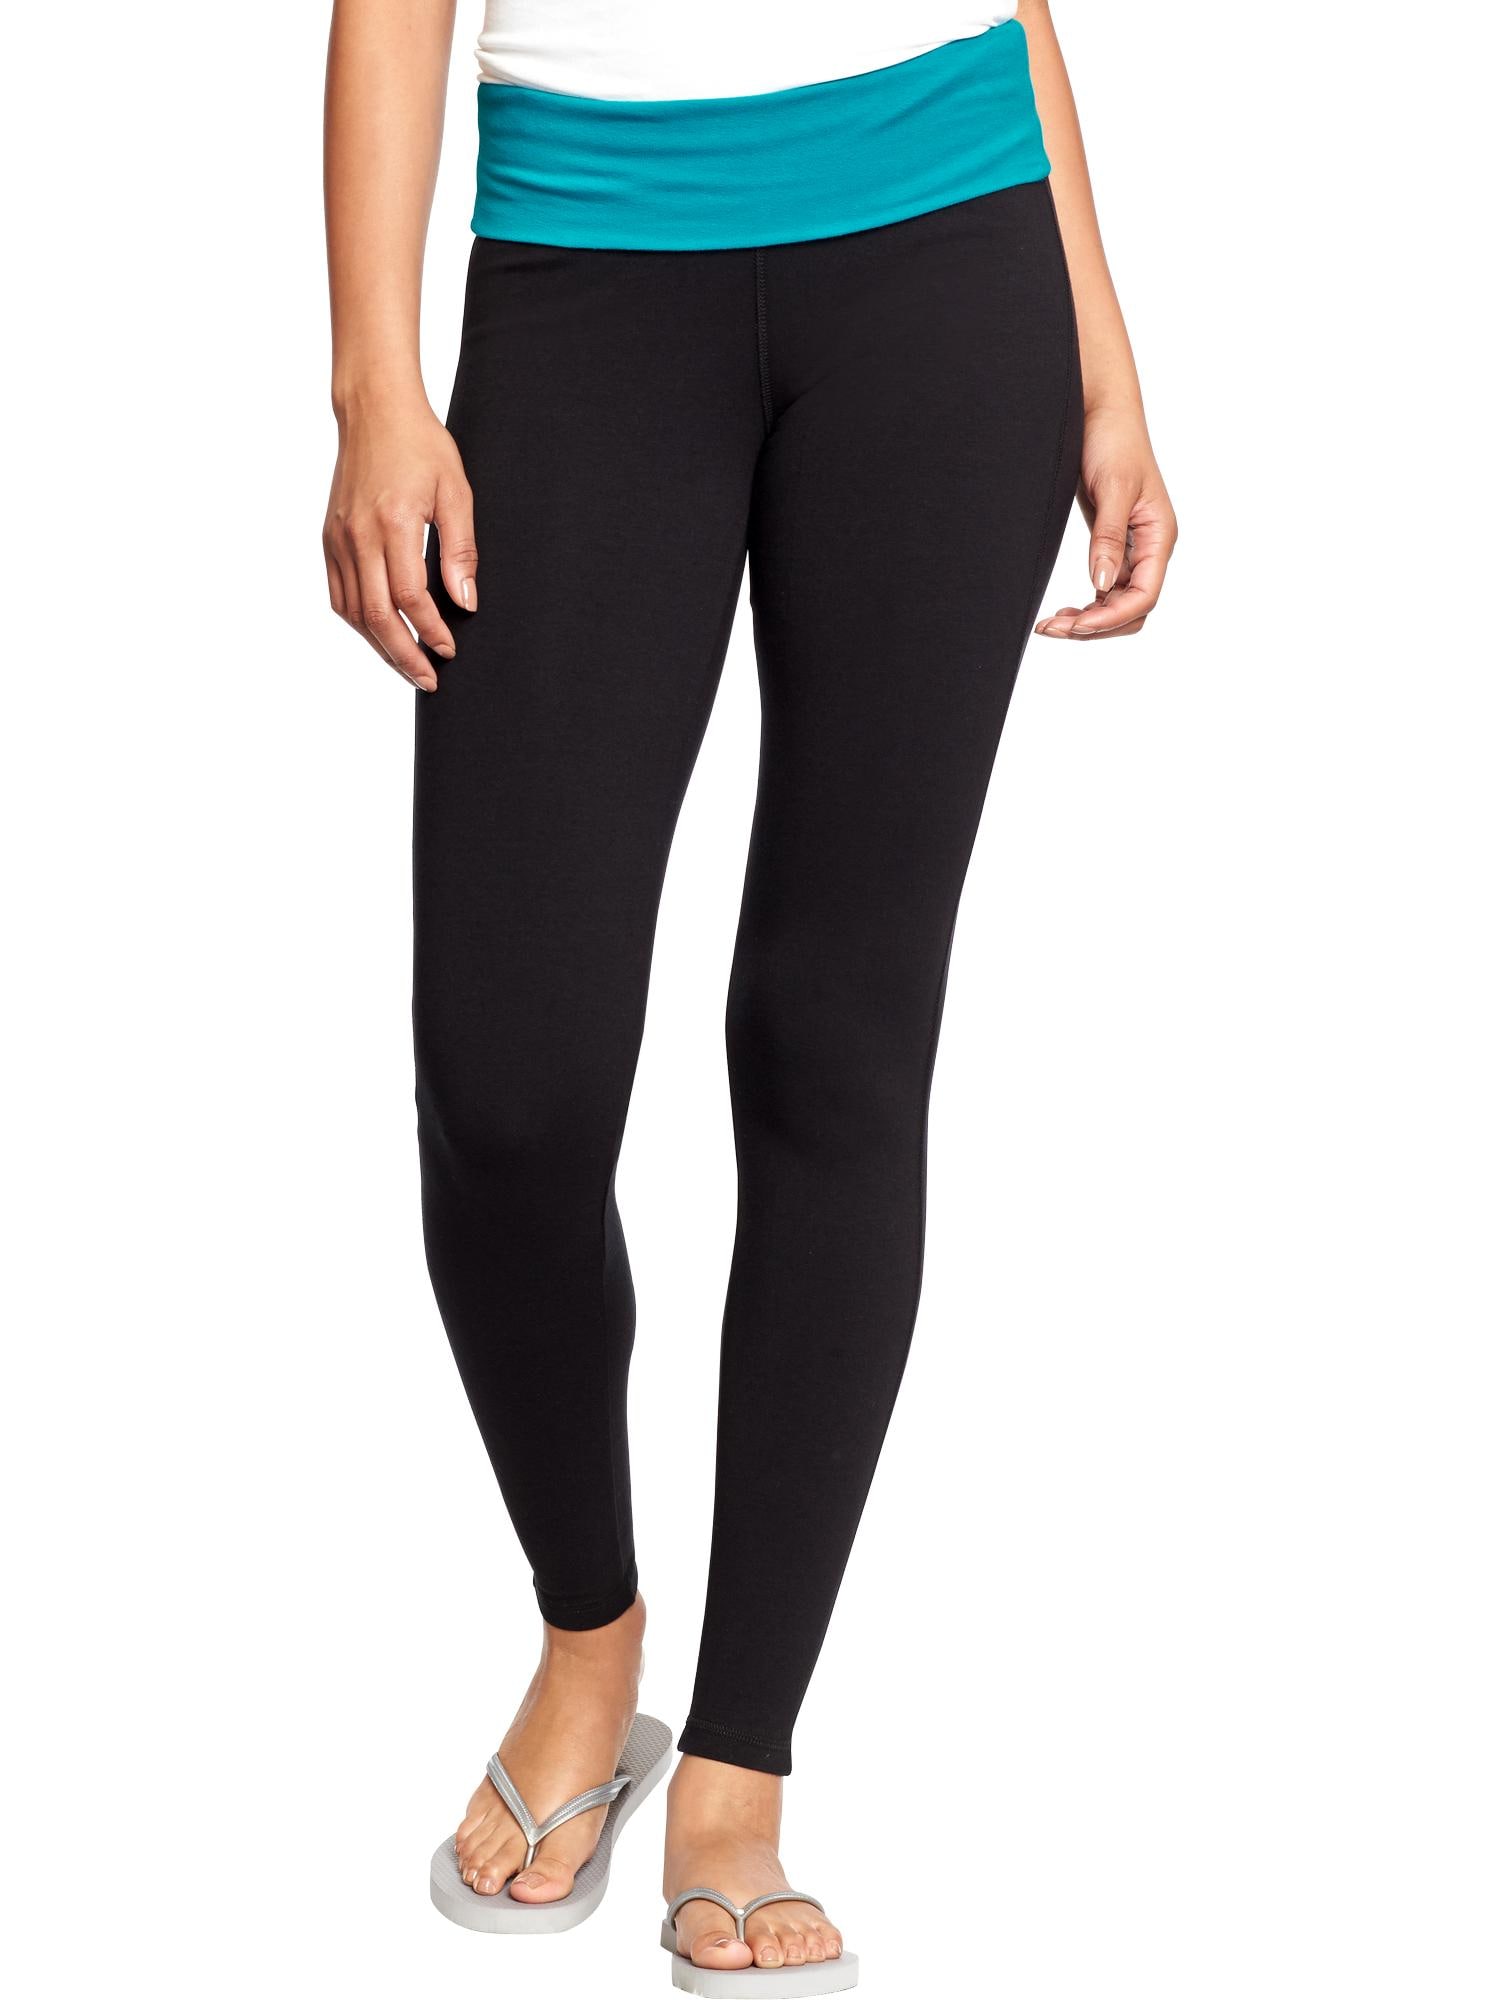 Lululemon Athletica Black Yoga Pants Size 8 - 56% off